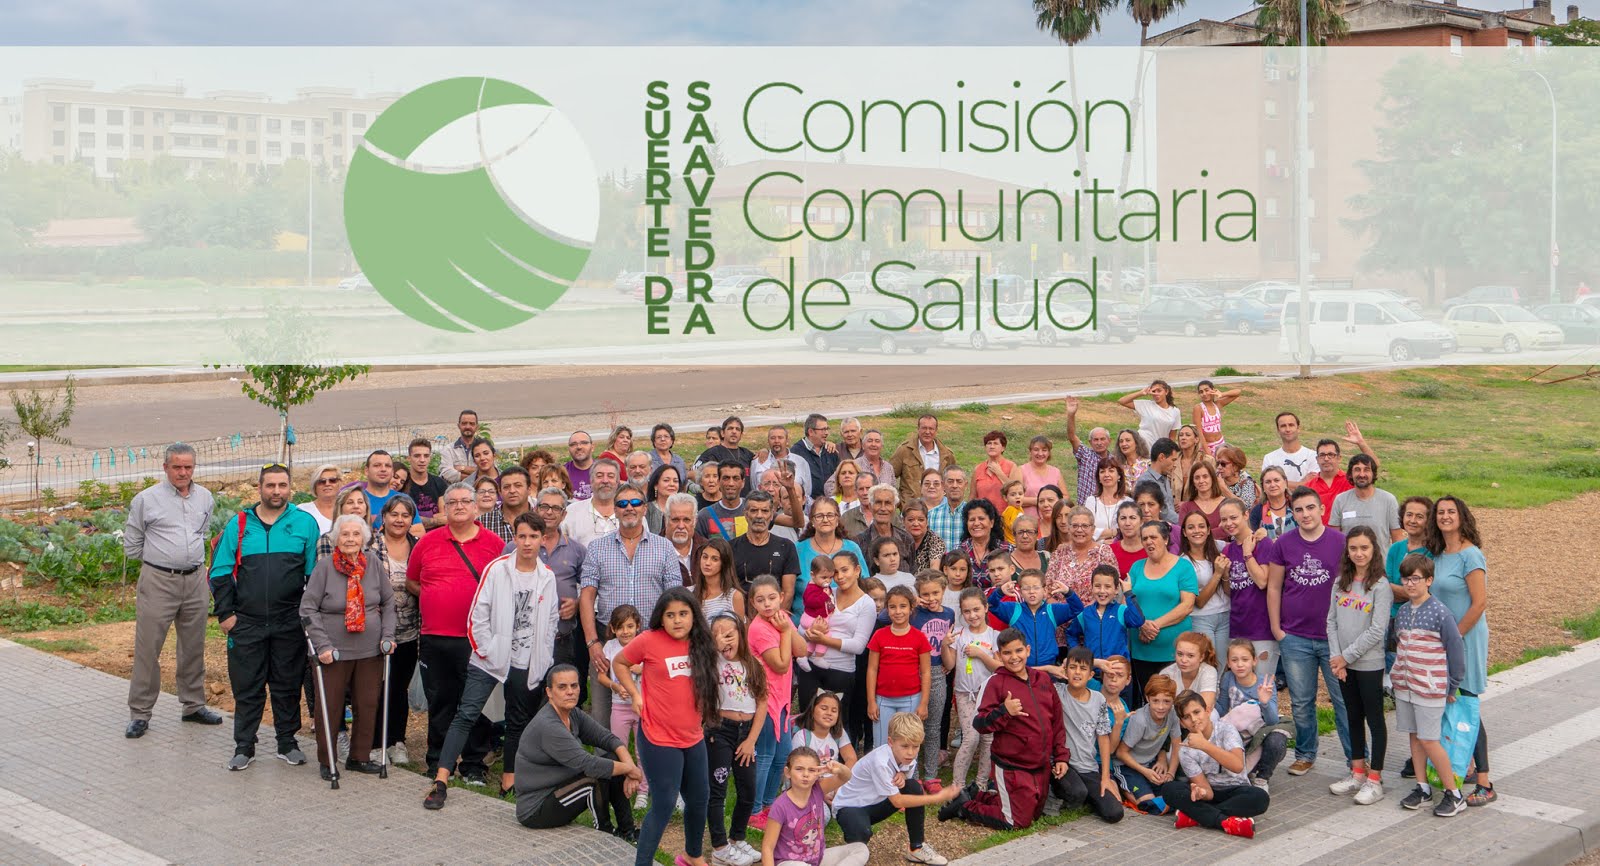 Comisión Comunitaria de Salud Suerte de Saavedra